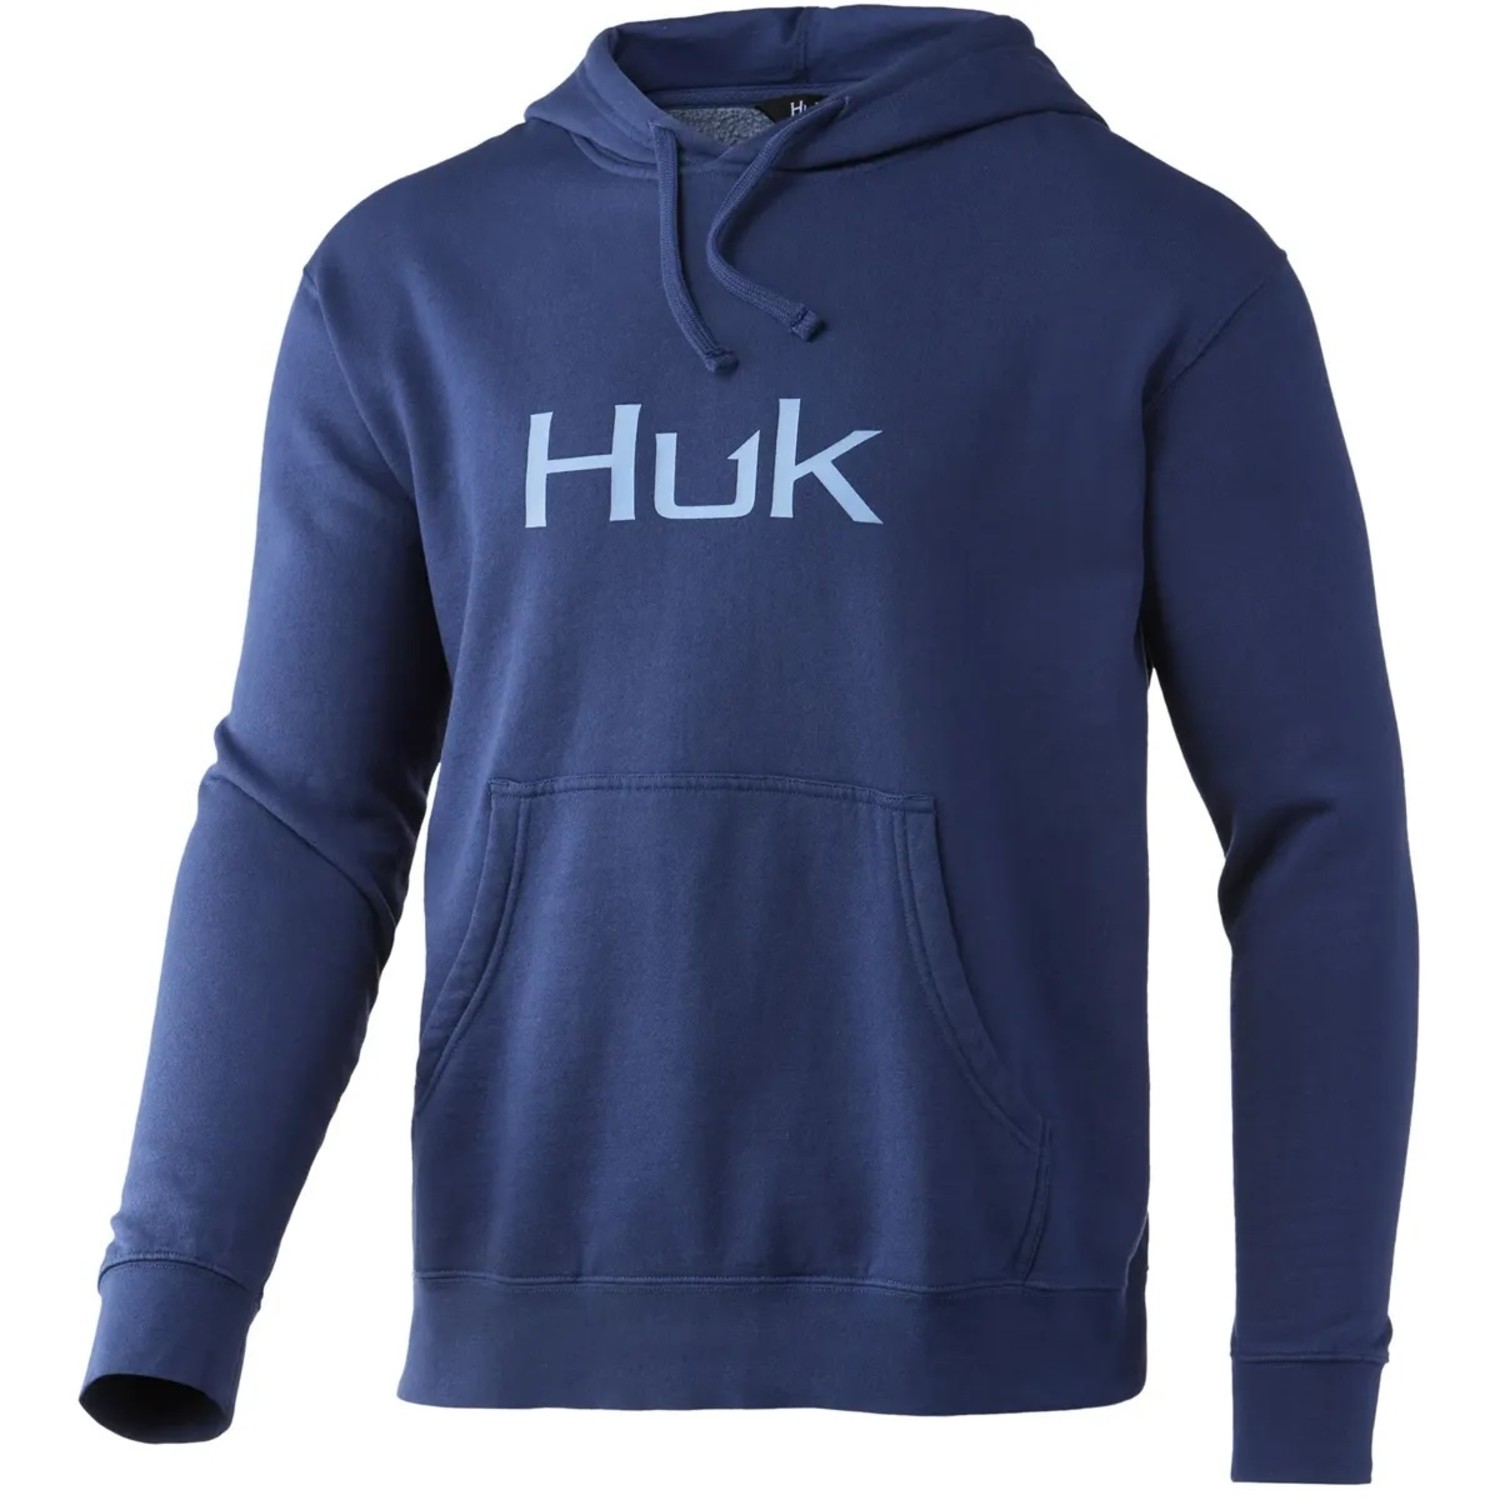 Huk huk logo hoodie